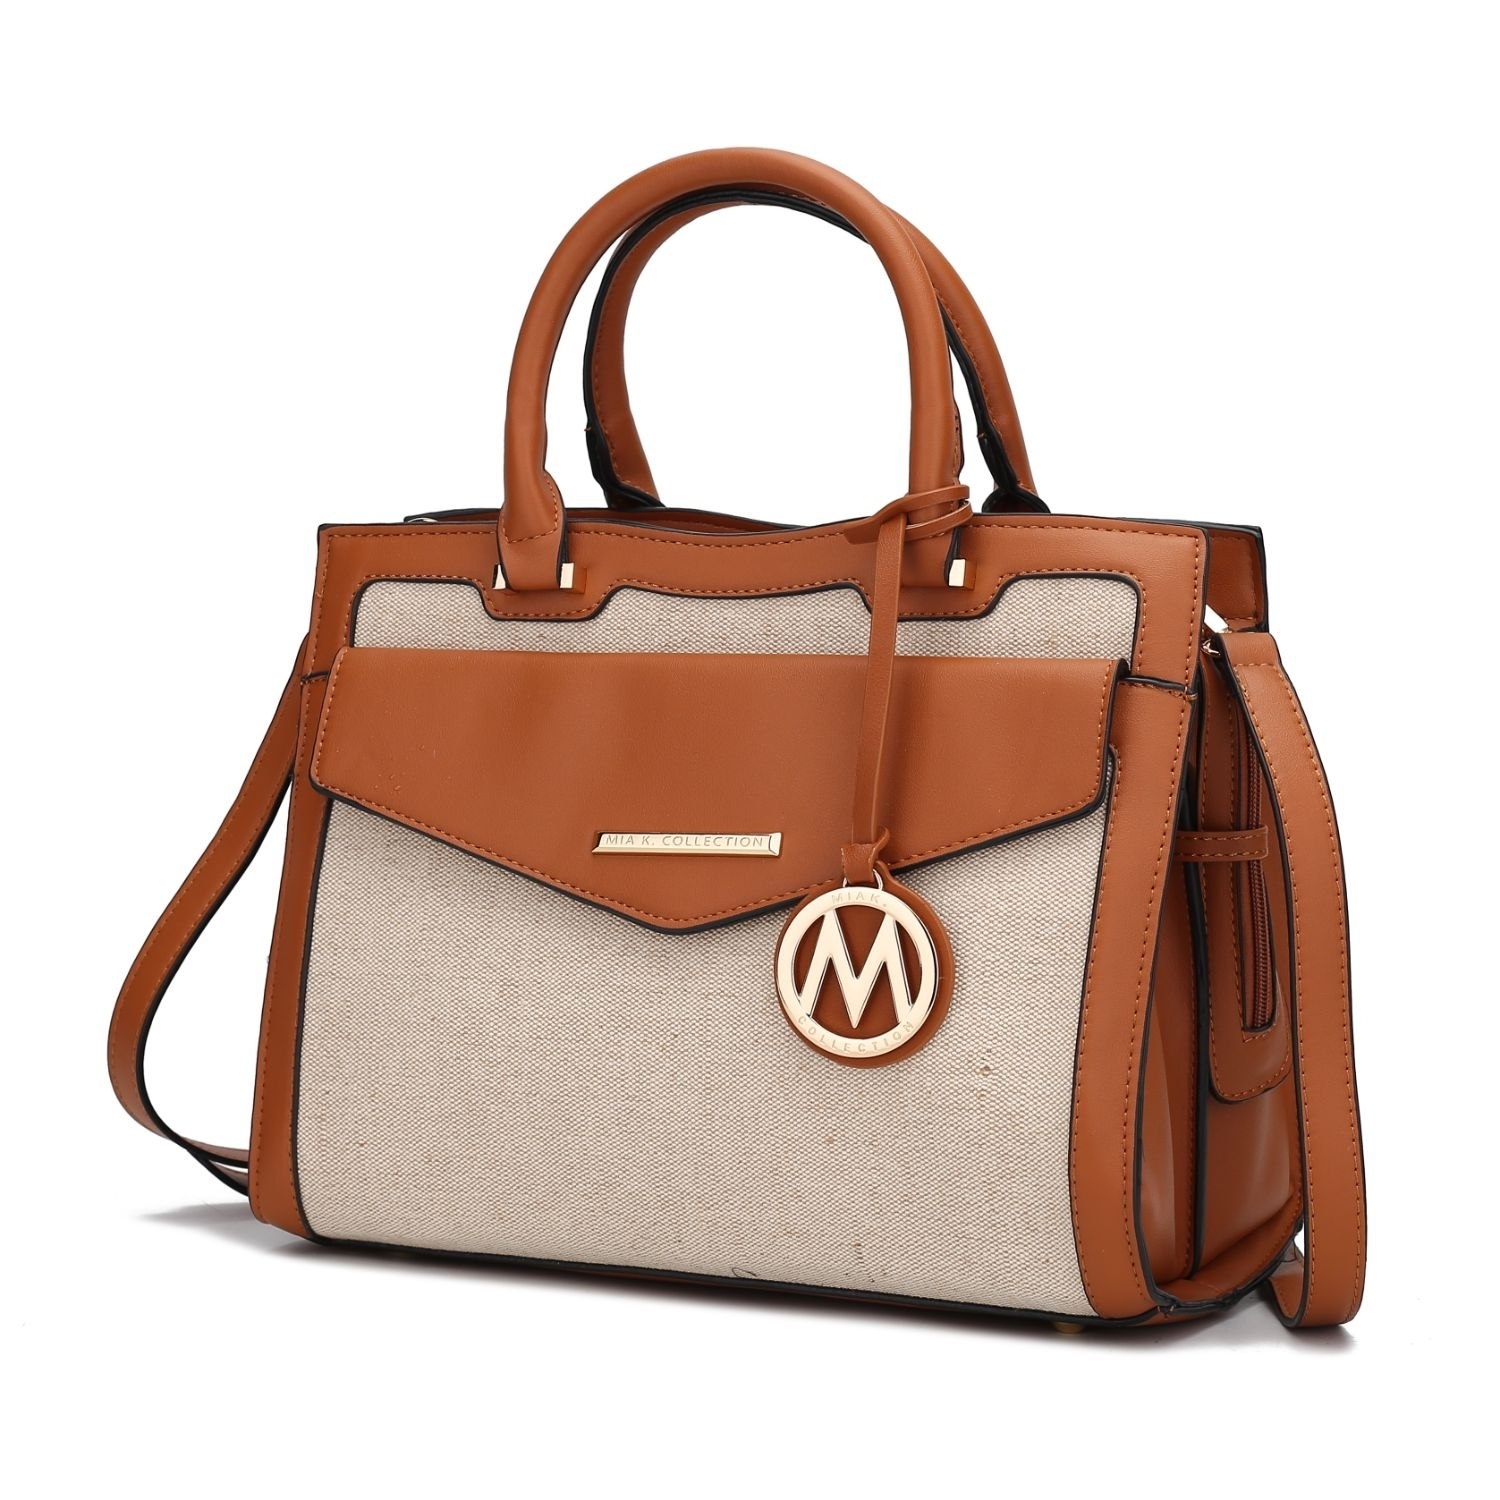 MKF Collection Alyssa Satchel Handbag By Mia K. - Cognac Combo